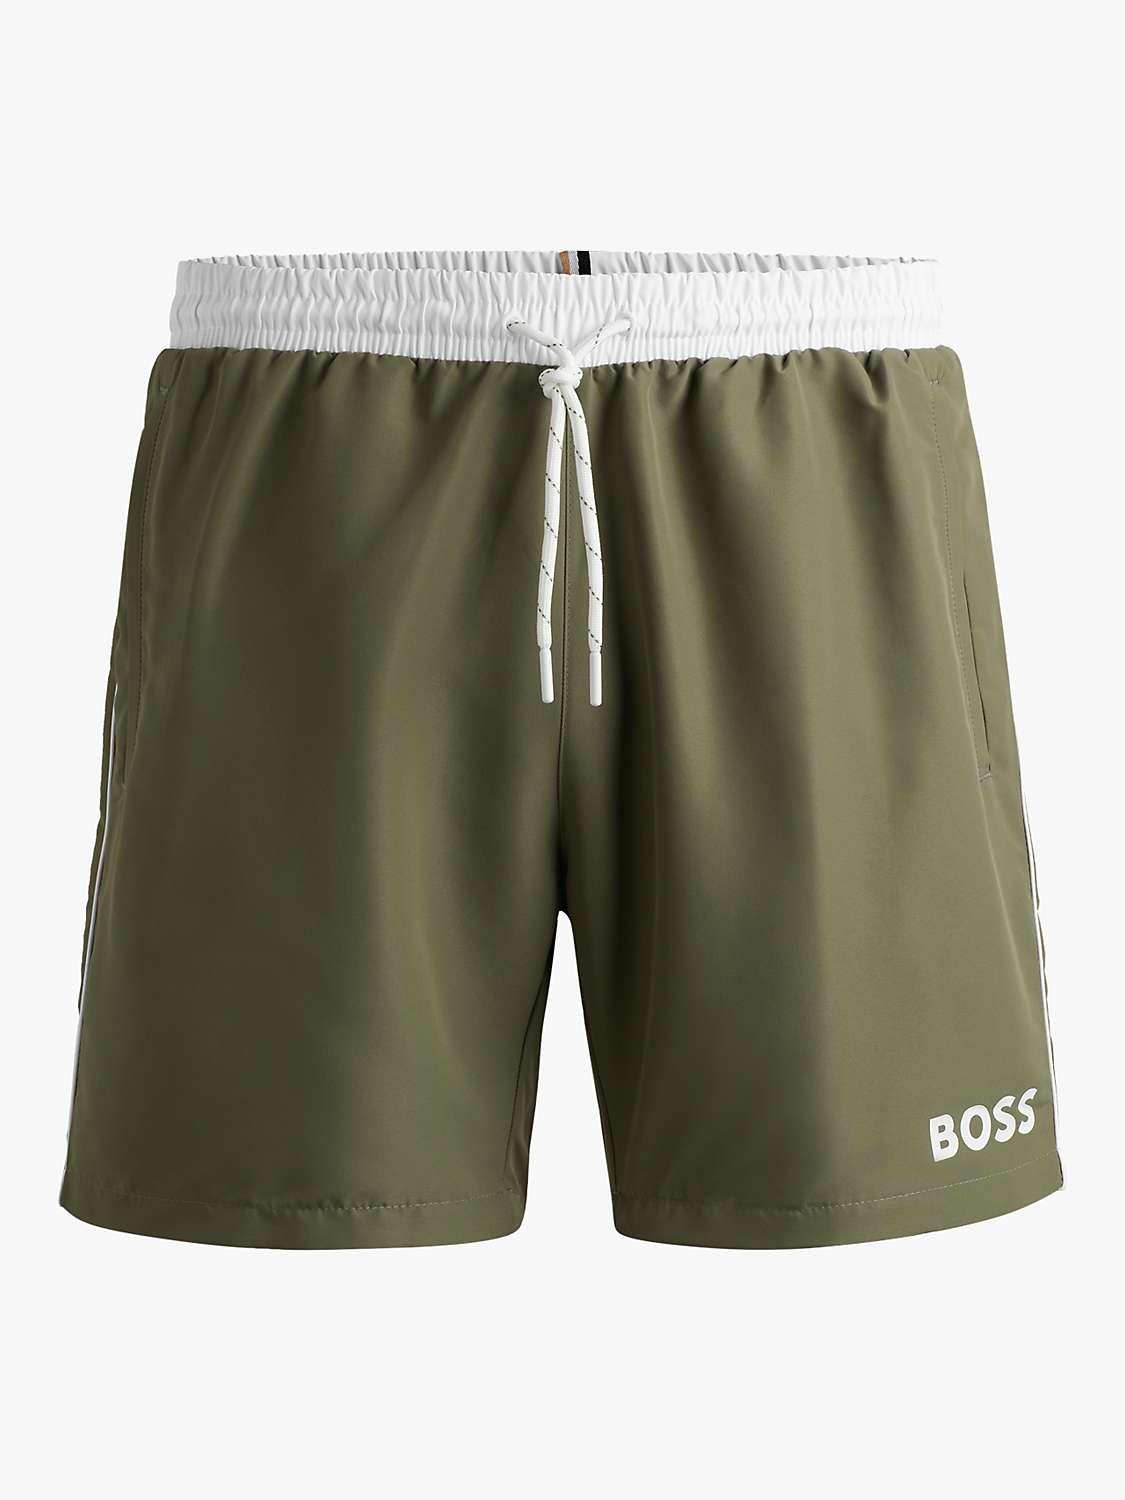 Buy BOSS Starfish Swim Shorts Online at johnlewis.com